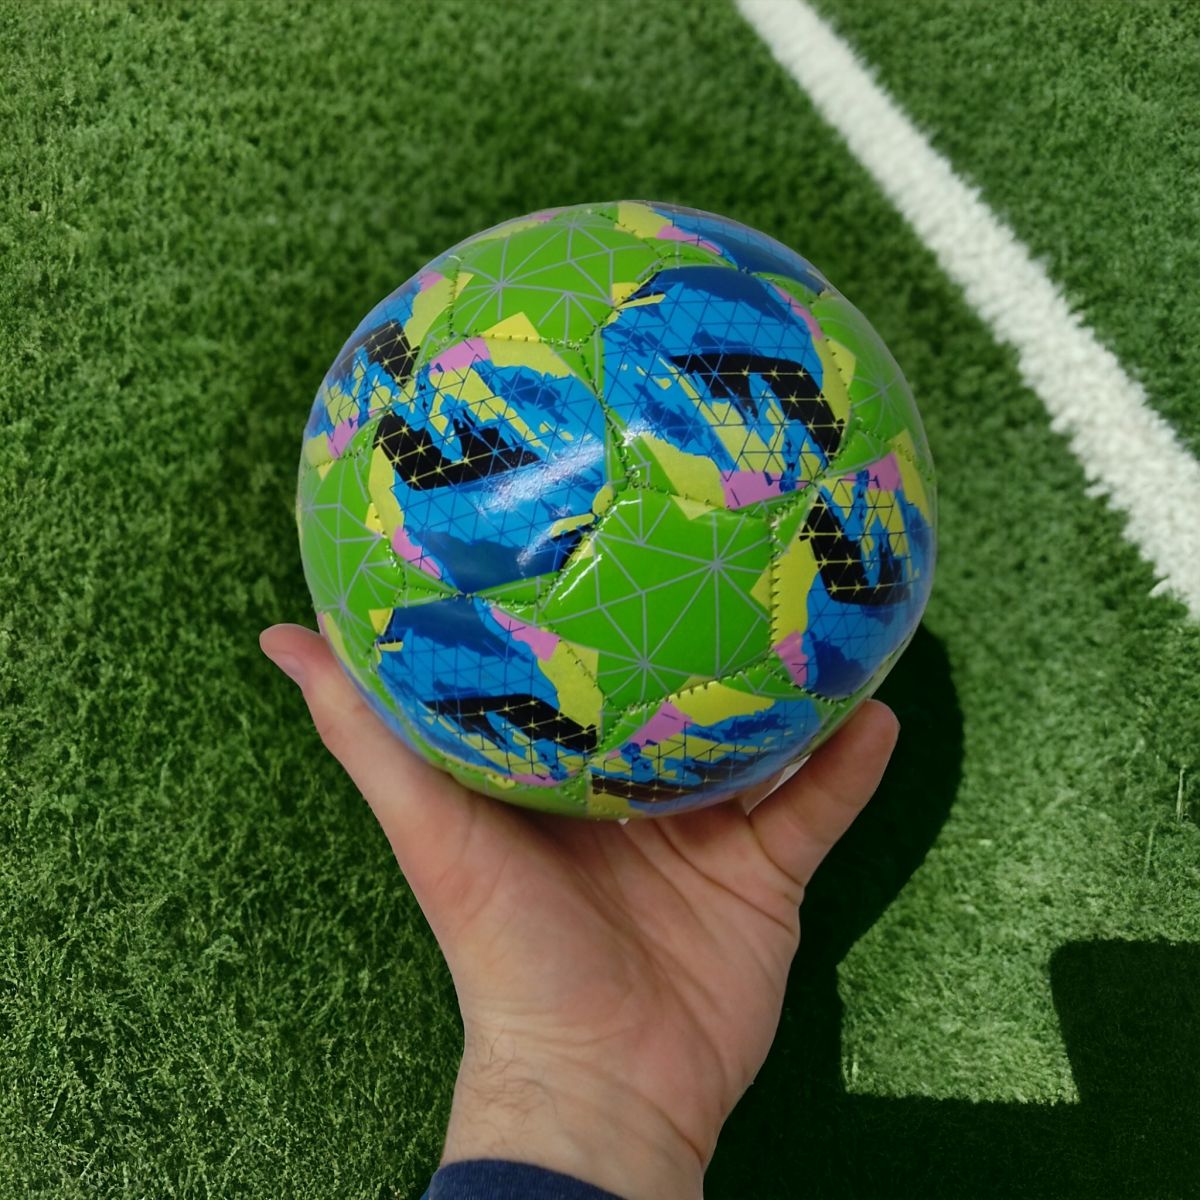 Мяч футбольный детский №2 "Звезды" (синий)